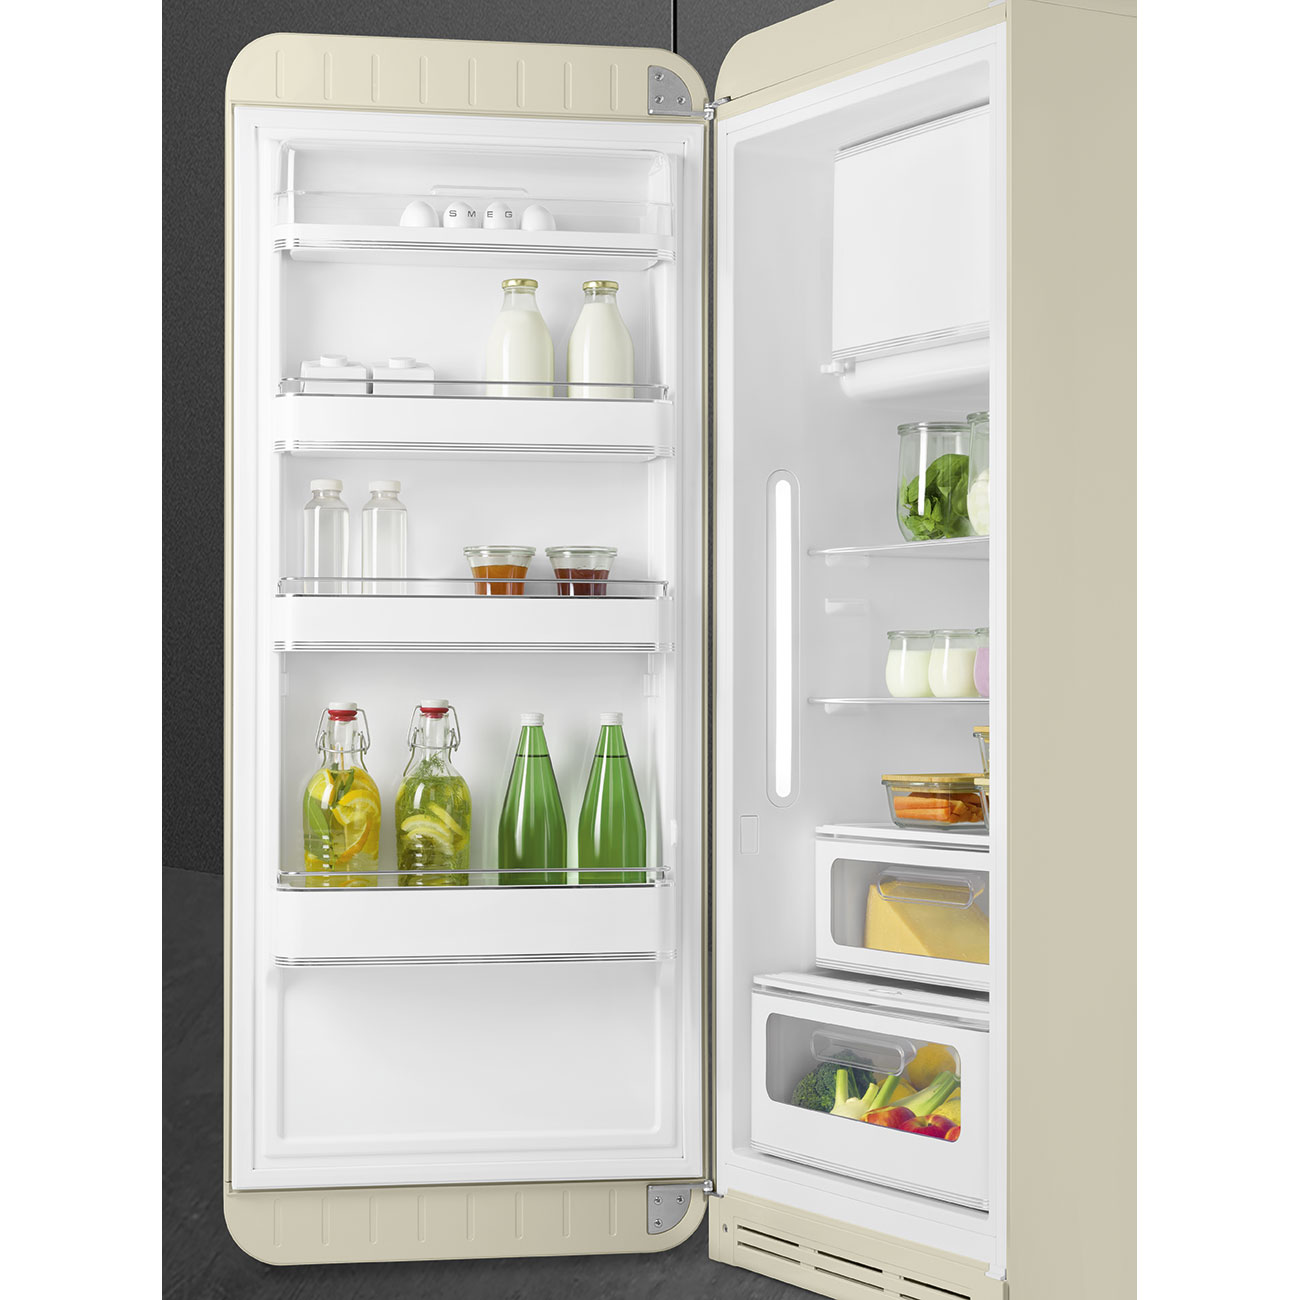 Cream refrigerator - Smeg_9